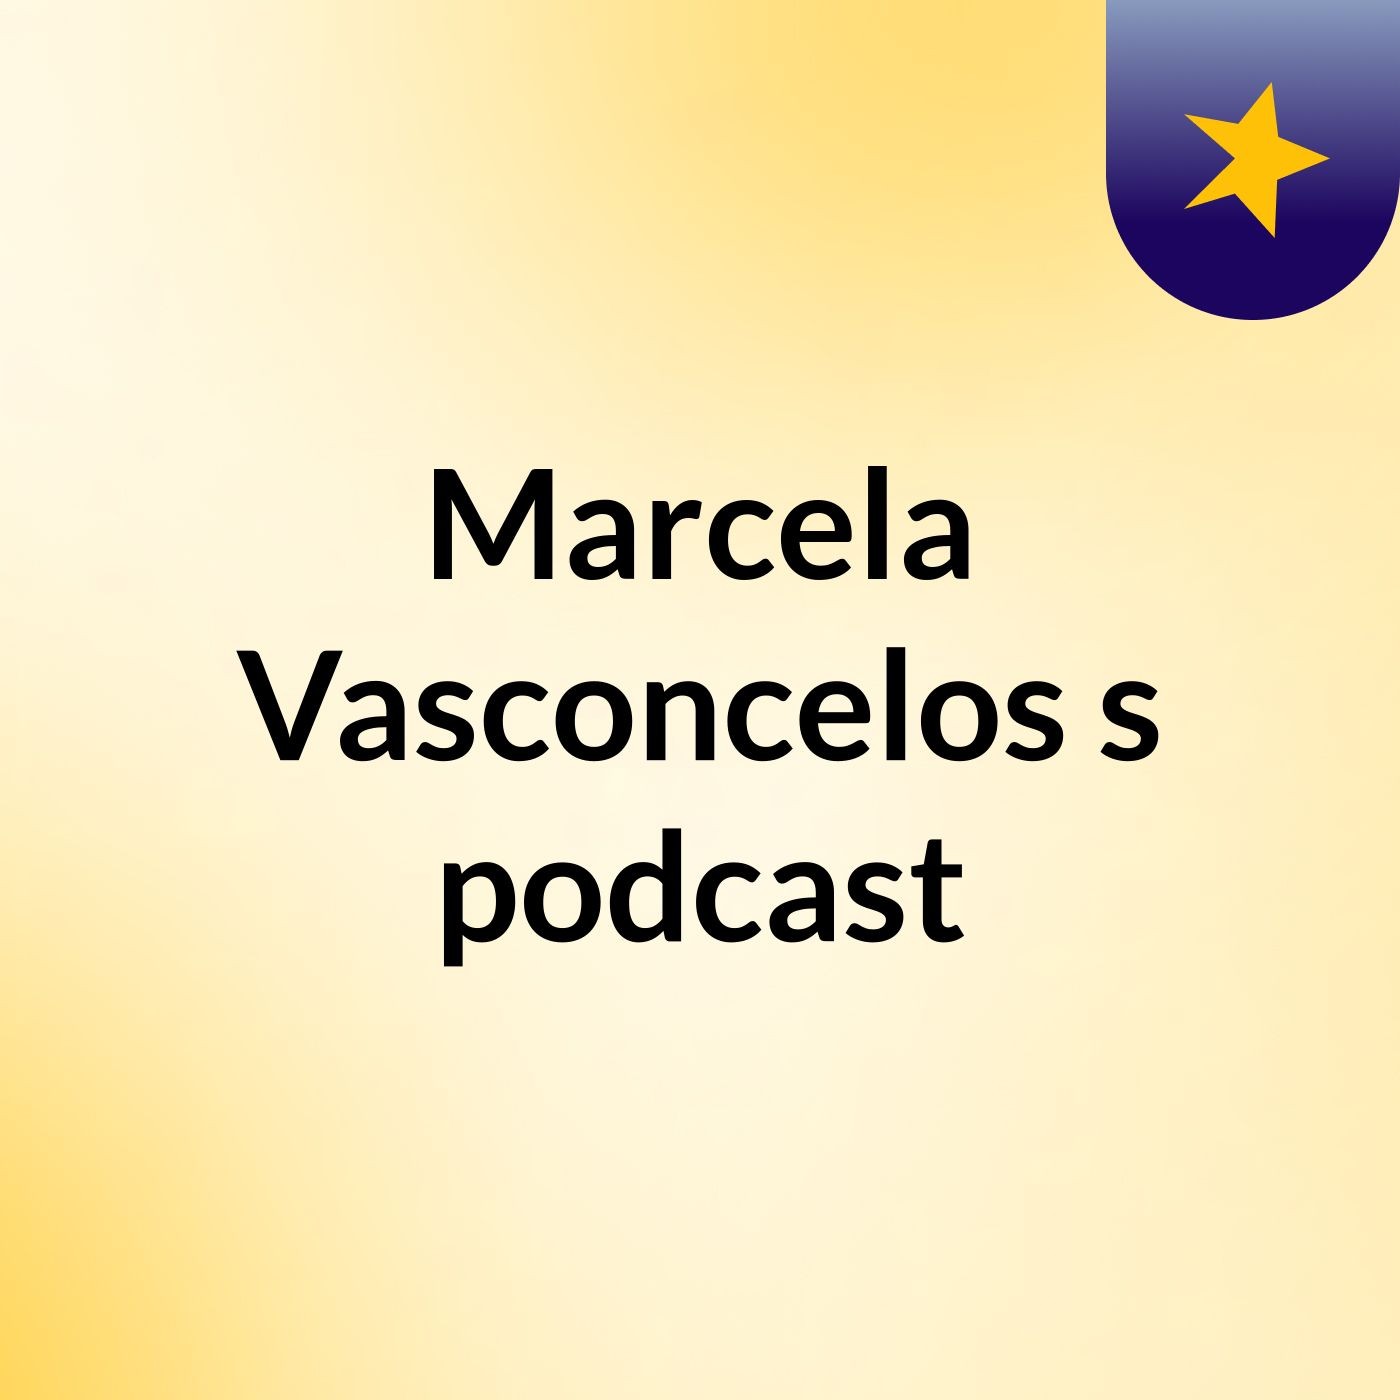 Marcela Vasconcelos's podcast